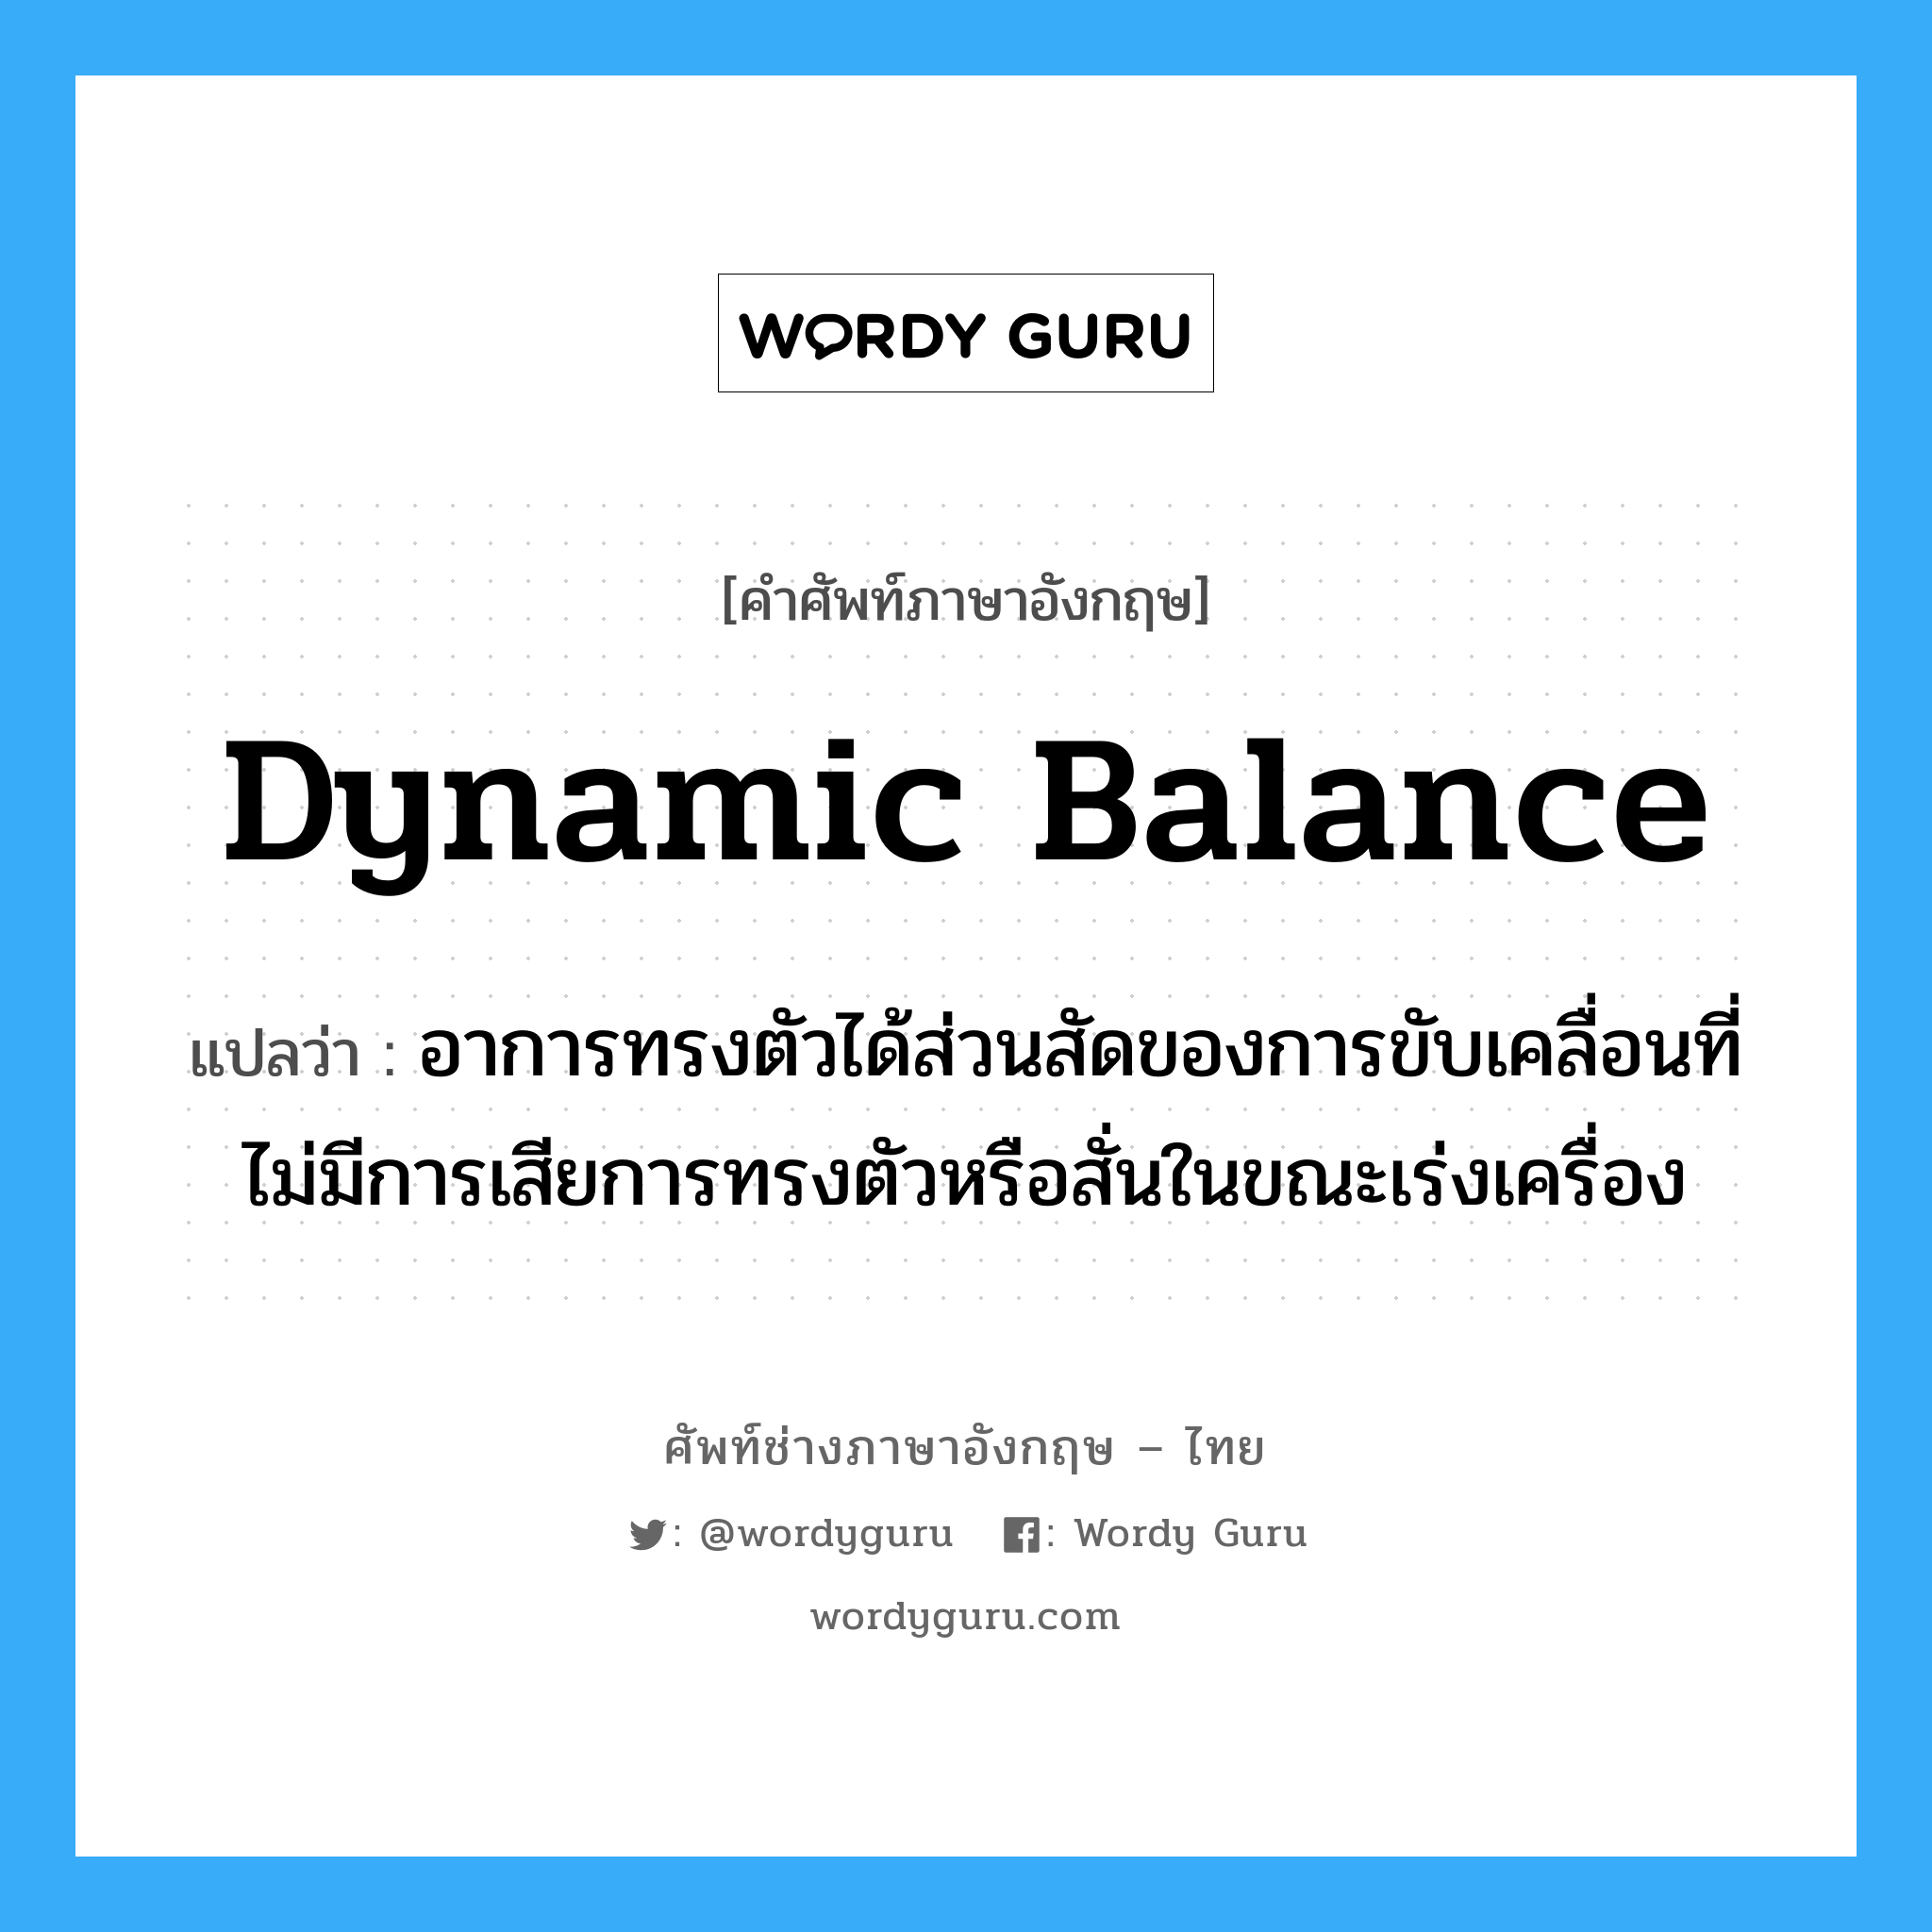 dynamic balance แปลว่า?, คำศัพท์ช่างภาษาอังกฤษ - ไทย dynamic balance คำศัพท์ภาษาอังกฤษ dynamic balance แปลว่า อาการทรงตัวได้ส่วนสัดของการขับเคลื่อนที่ไม่มีการเสียการทรงตัวหรือสั่นในขณะเร่งเครื่อง